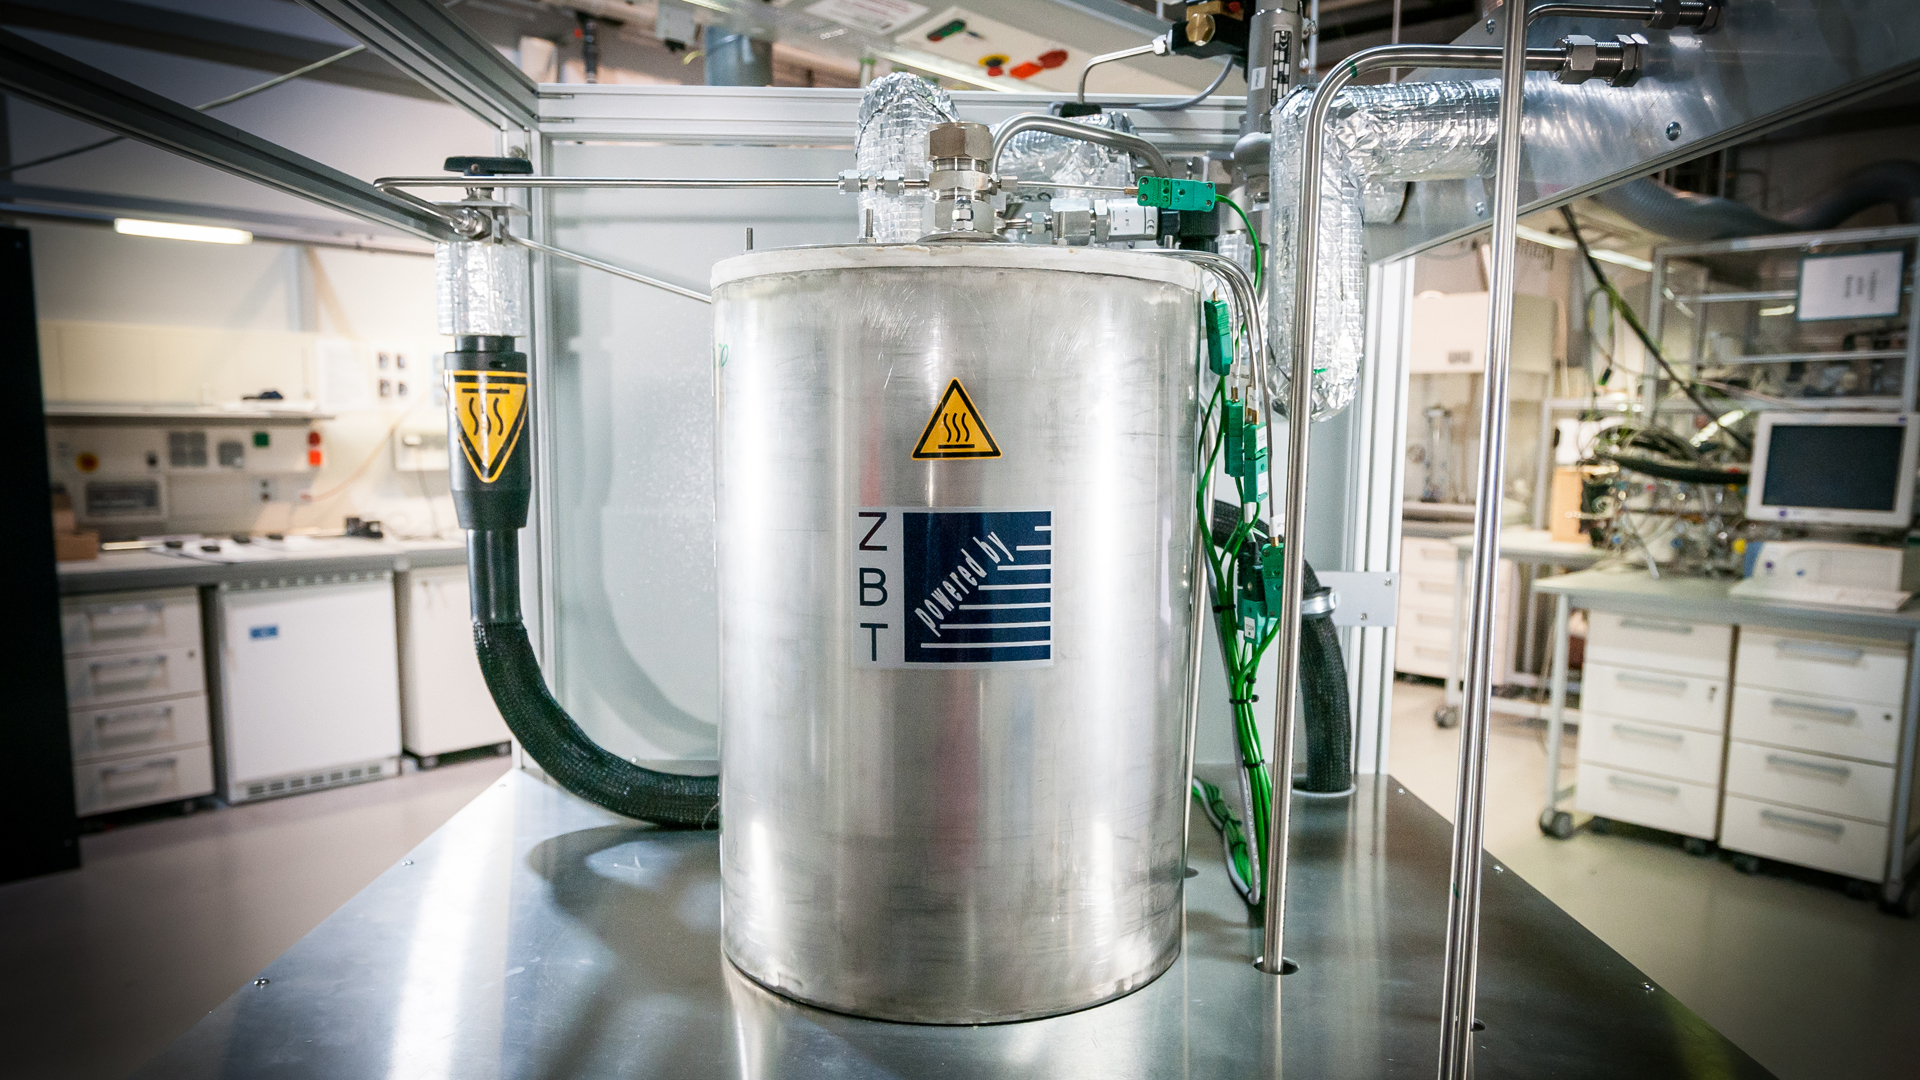 Der Ammoniak-Cracker steht als Edelstahl-Zylinder in der Mitte eines Labors.